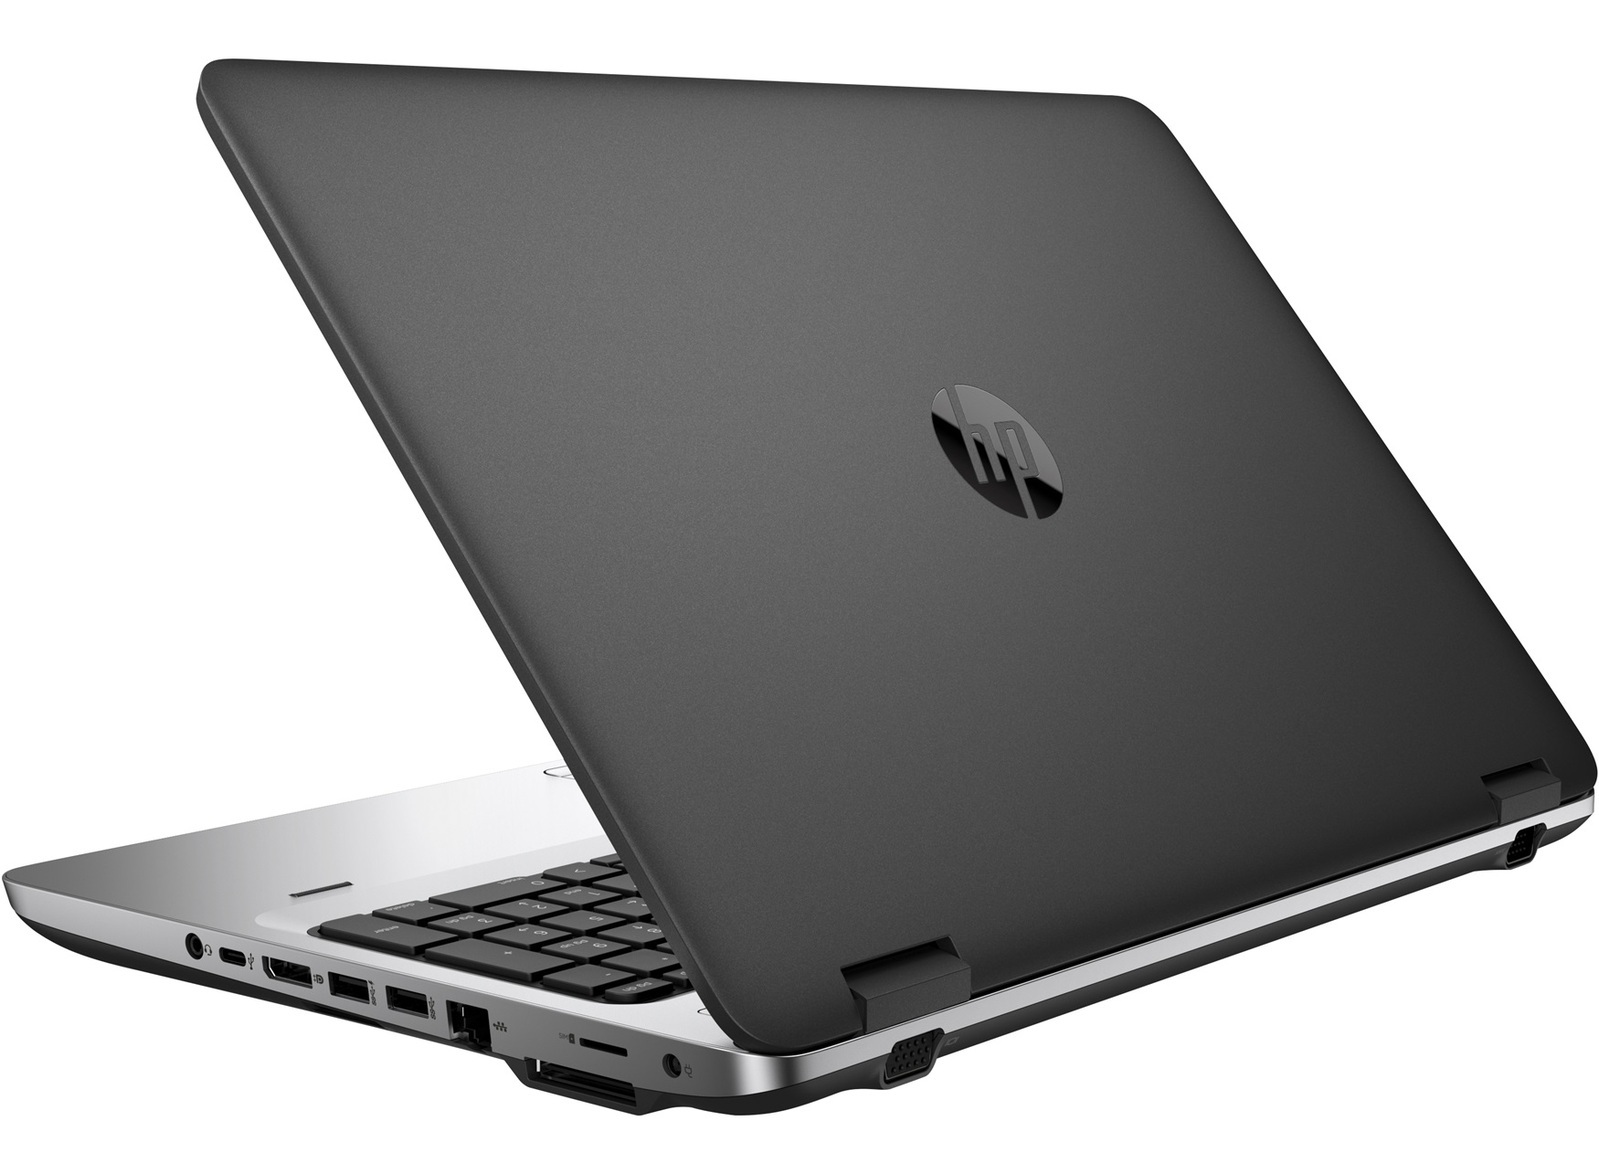 HP ProBook 650 G2 Intel i5 6300u 2.40Ghz 12GB RAM 128GB SSD 15.6" Win 10 Pro - B Grade Image 2